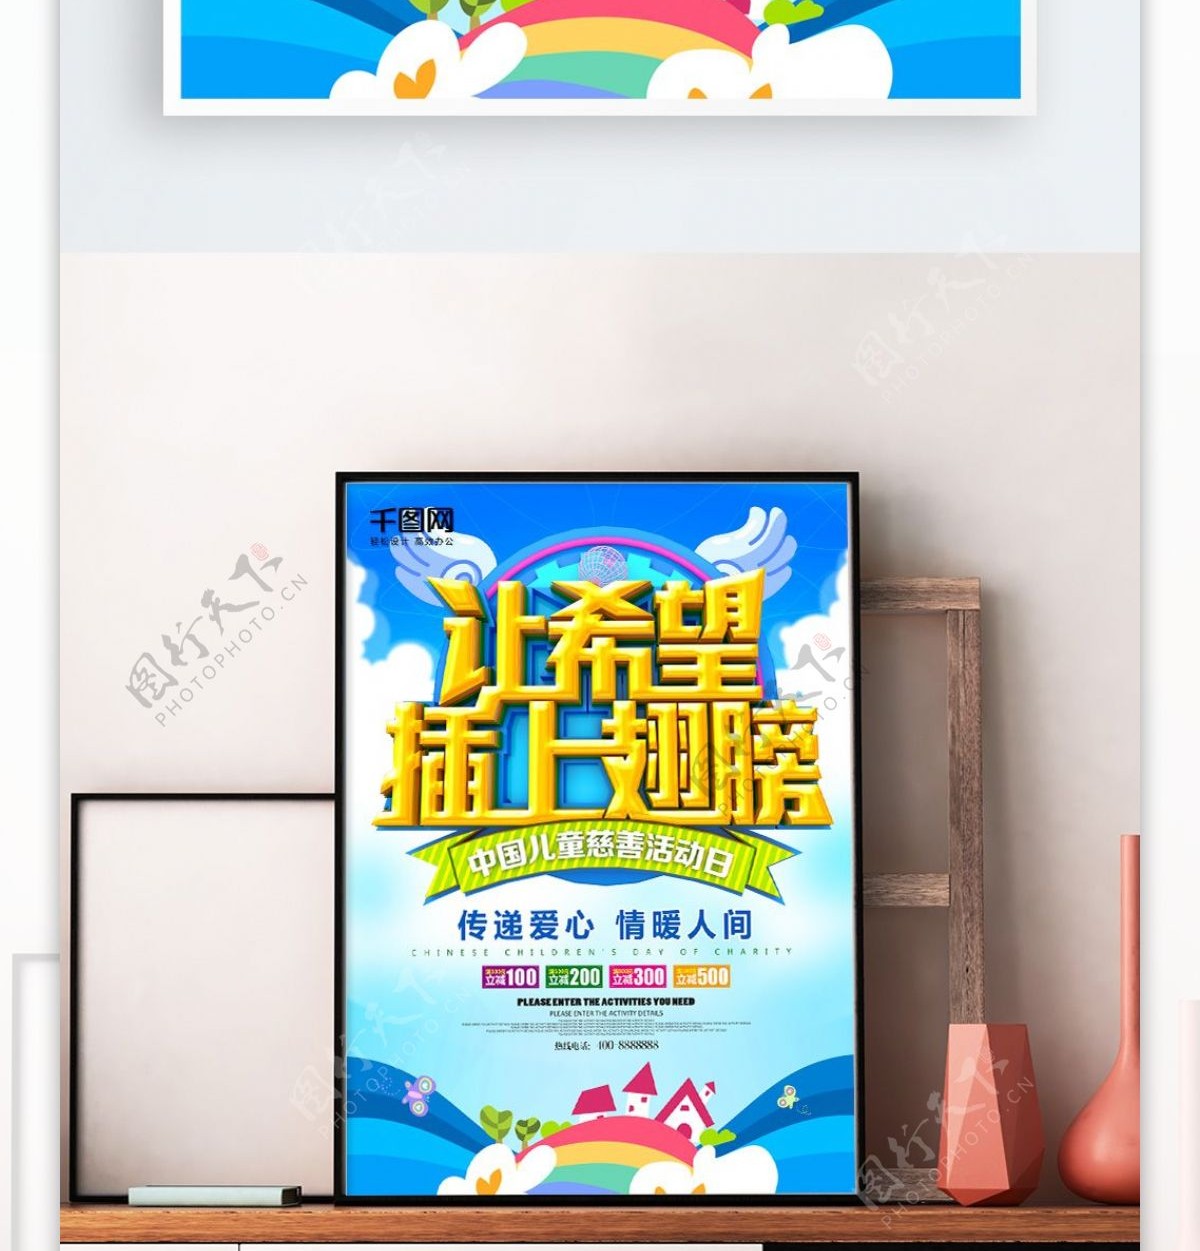 中国儿童慈善活动日海报